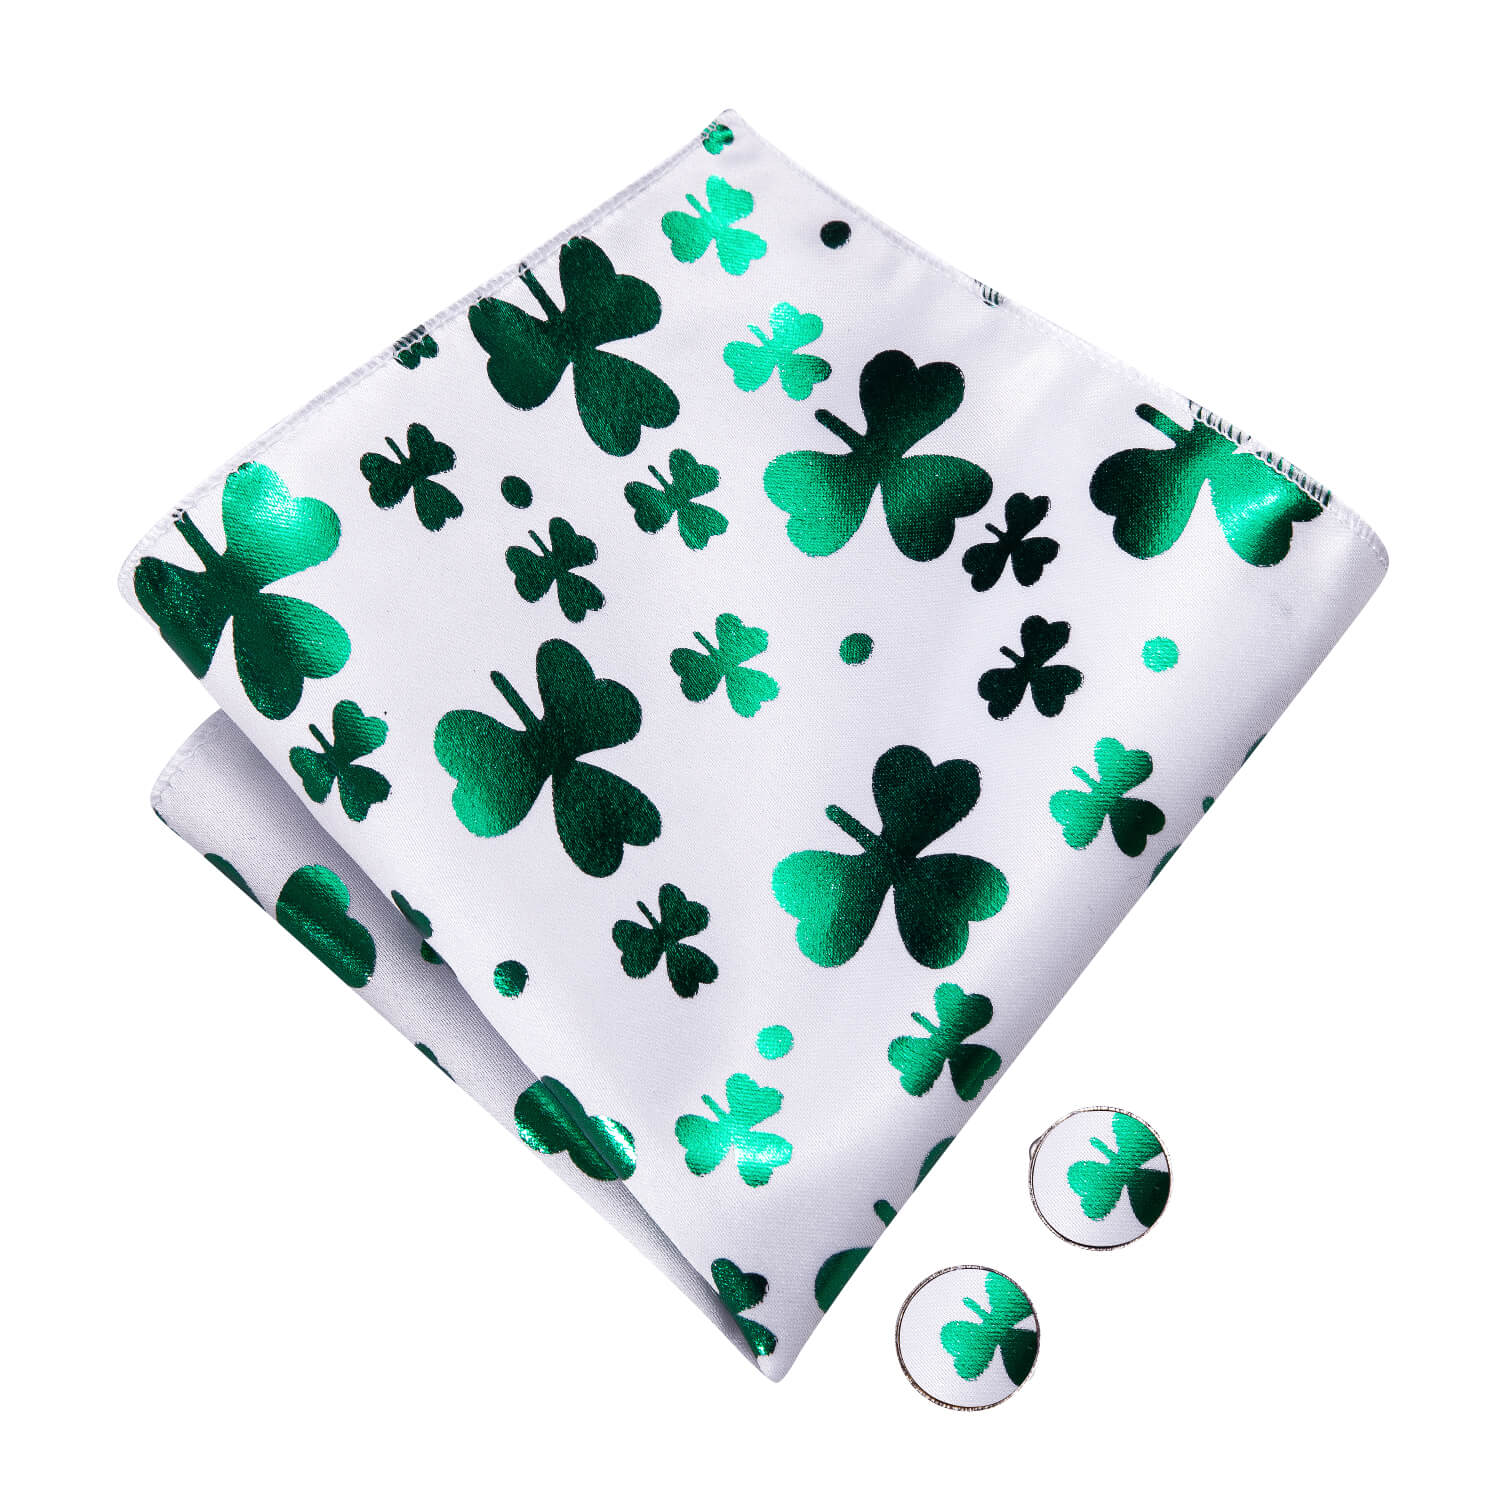 Hi-Tie White Green Clover Pre-Tied Bow Tie Handkerchief Cufflink Set